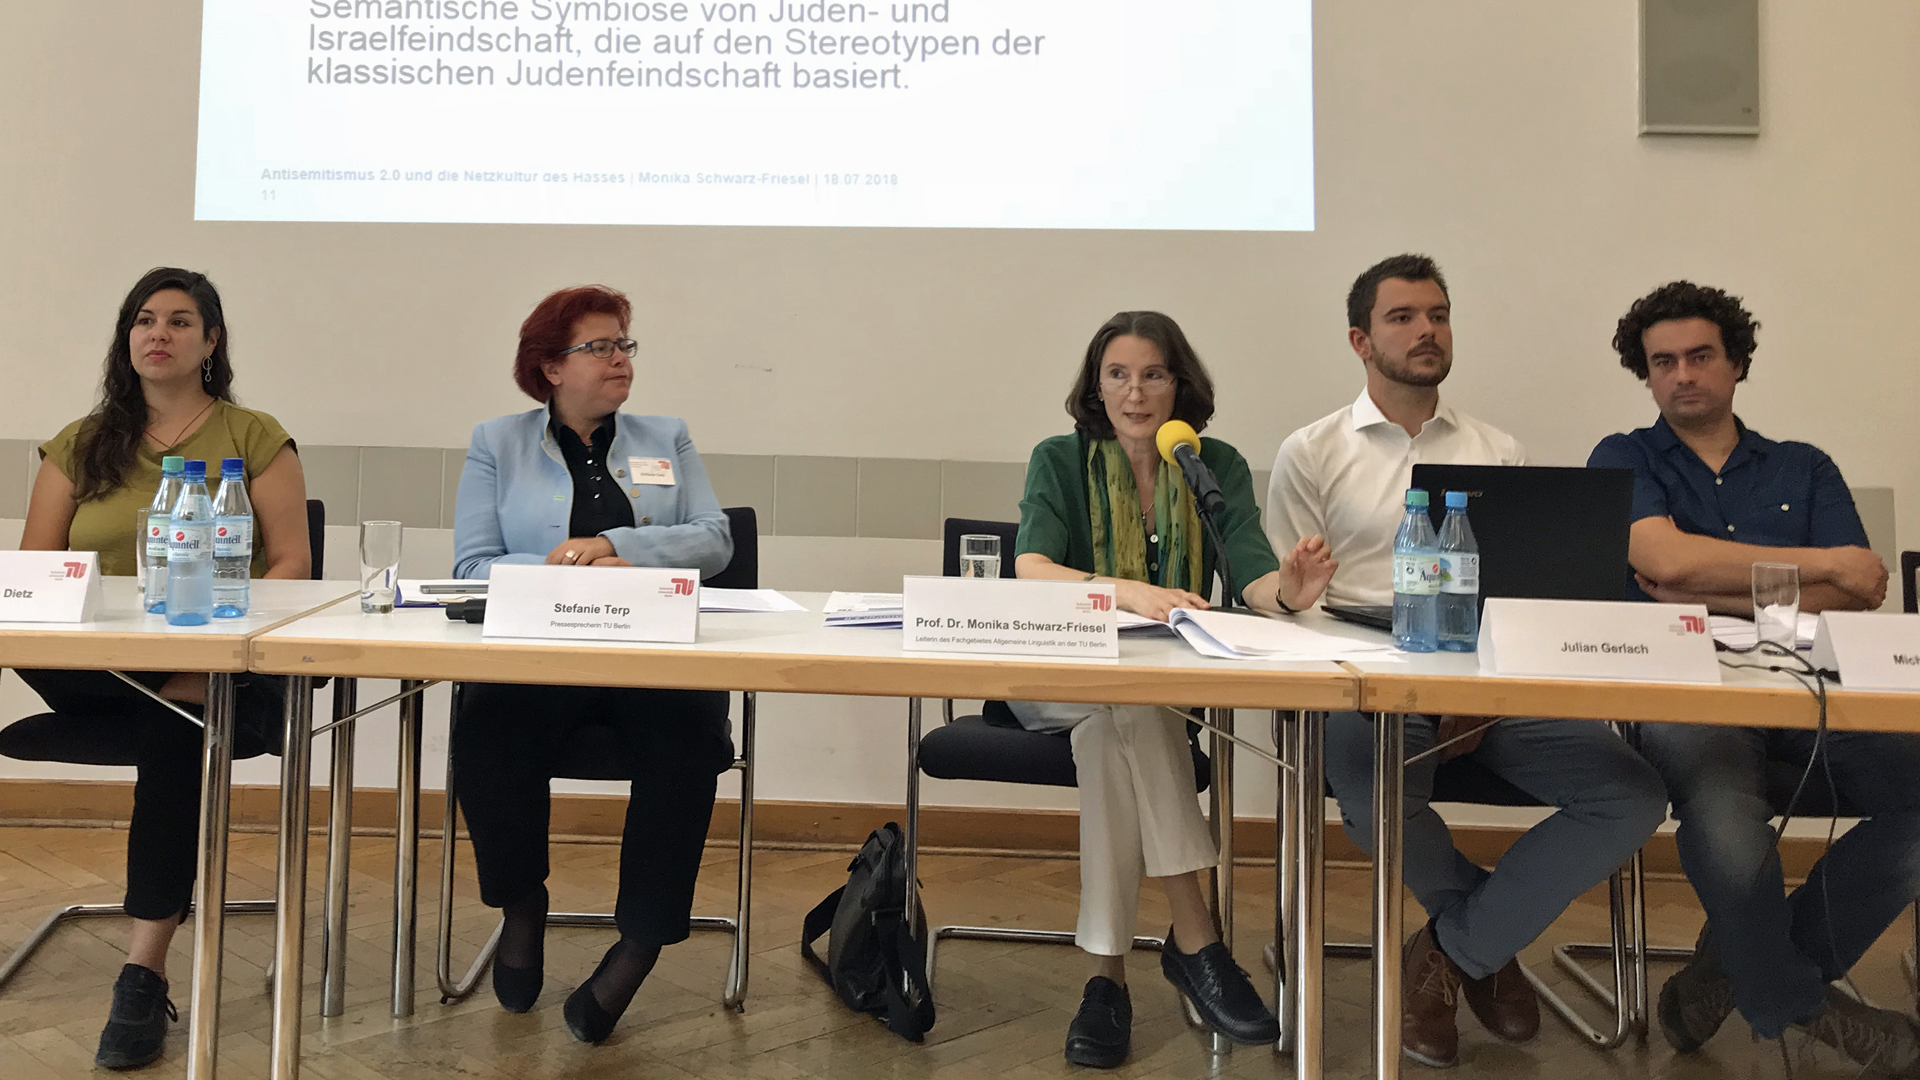 Monika Schwarz-Friesel (Mitte) und ein Team der TU Berlin bei der Vorstellung der Studie „Antisemitismus 2.0 und die Netzkultur des Hasses“